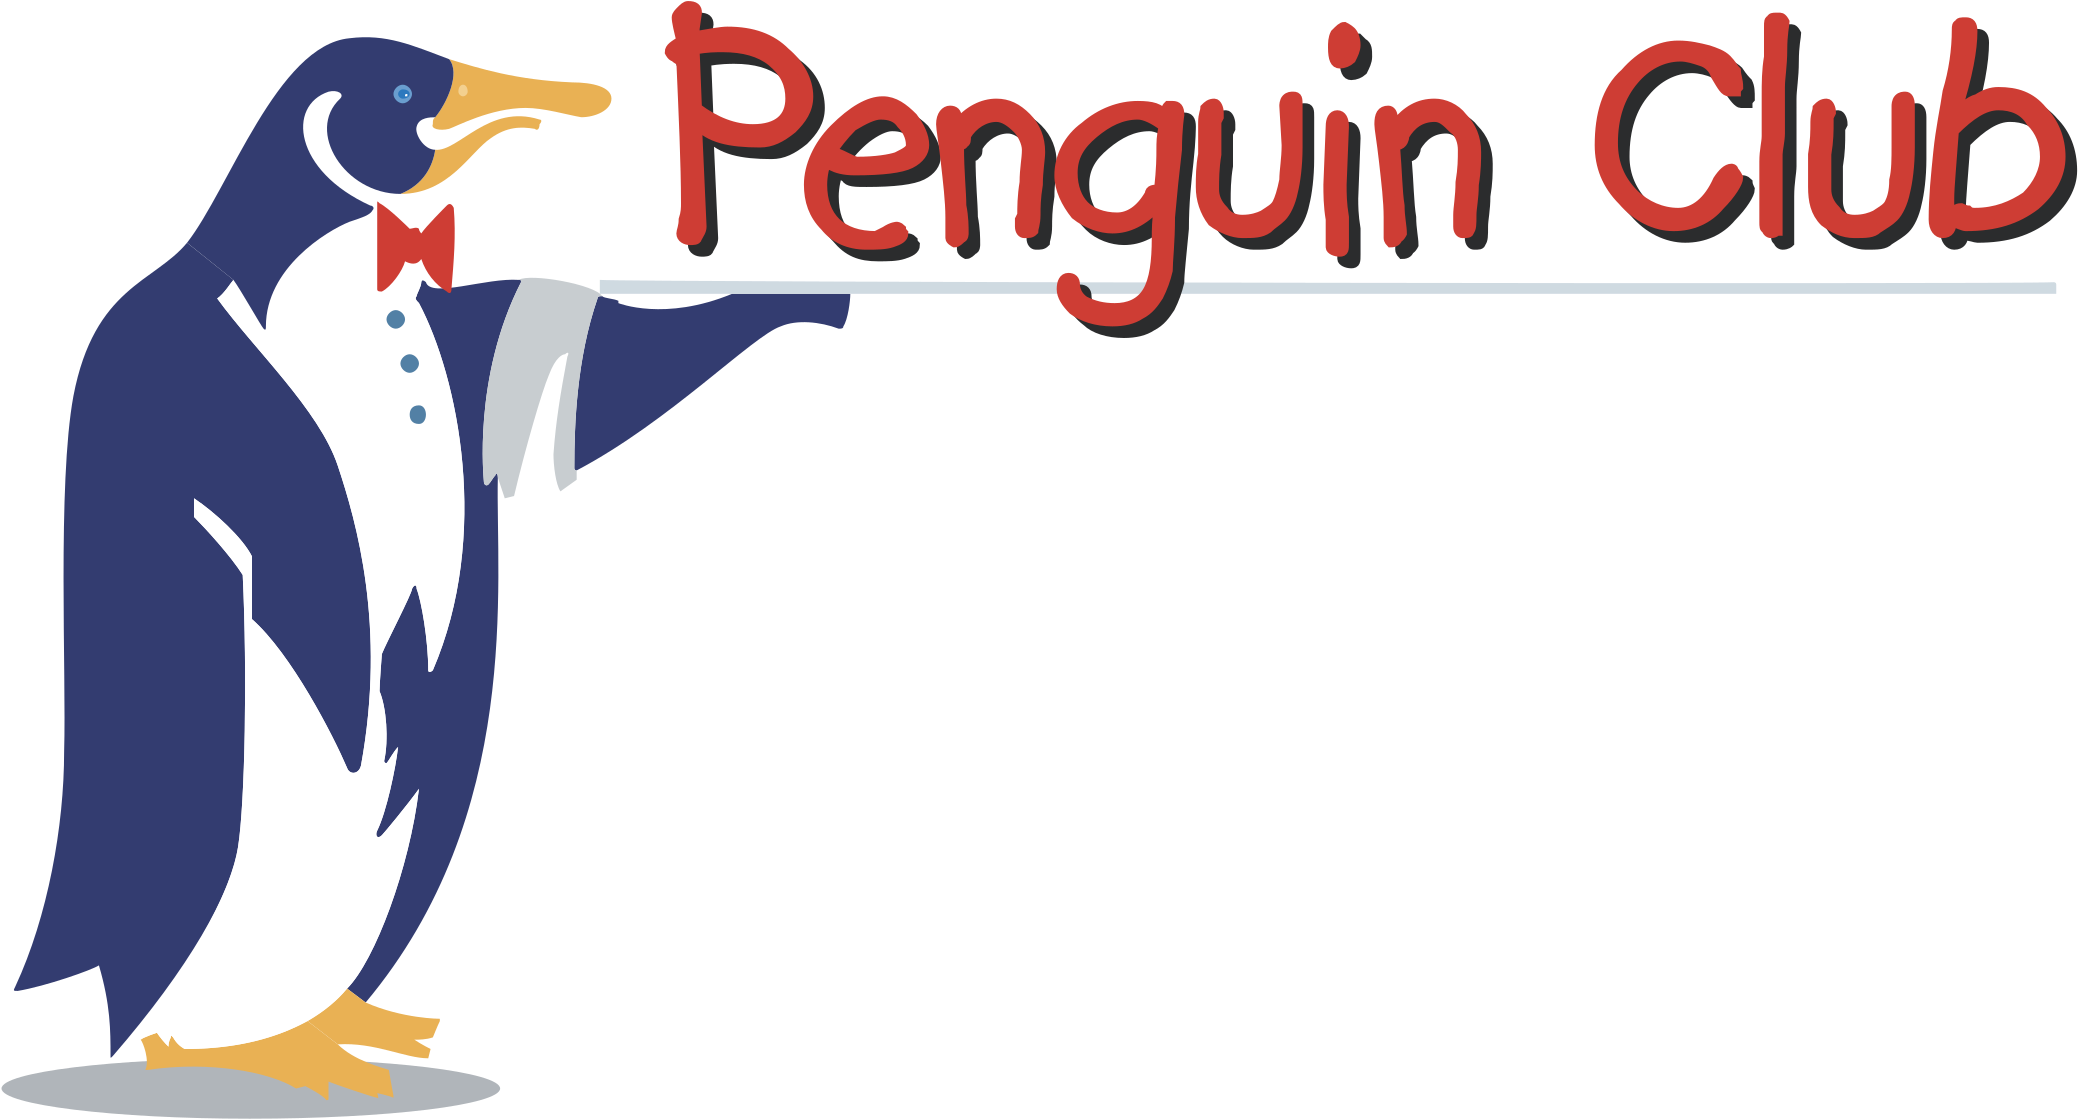 Penguin Club Logo Png Transparent - Adã©lie Penguin (2400x2400), Png Download